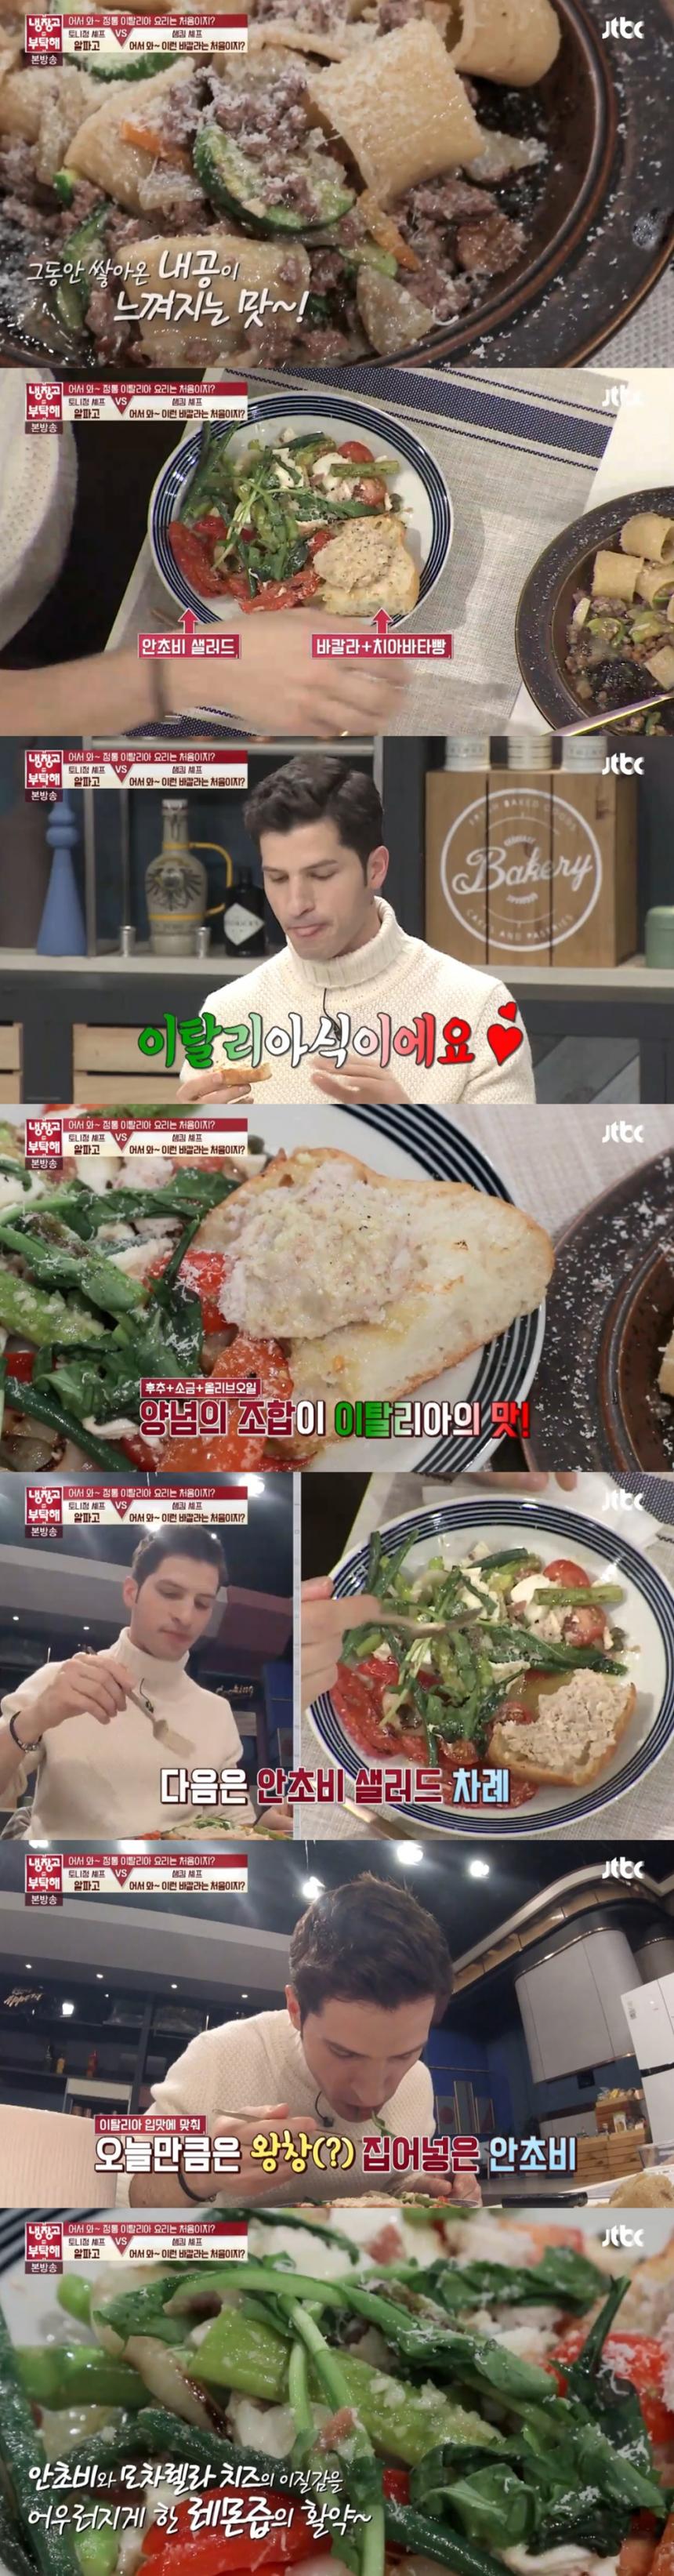 라구 소스 파스타-바칼라-안초비 샐러드 / JTBC ‘냉장고를 부탁해’ 방송 캡처